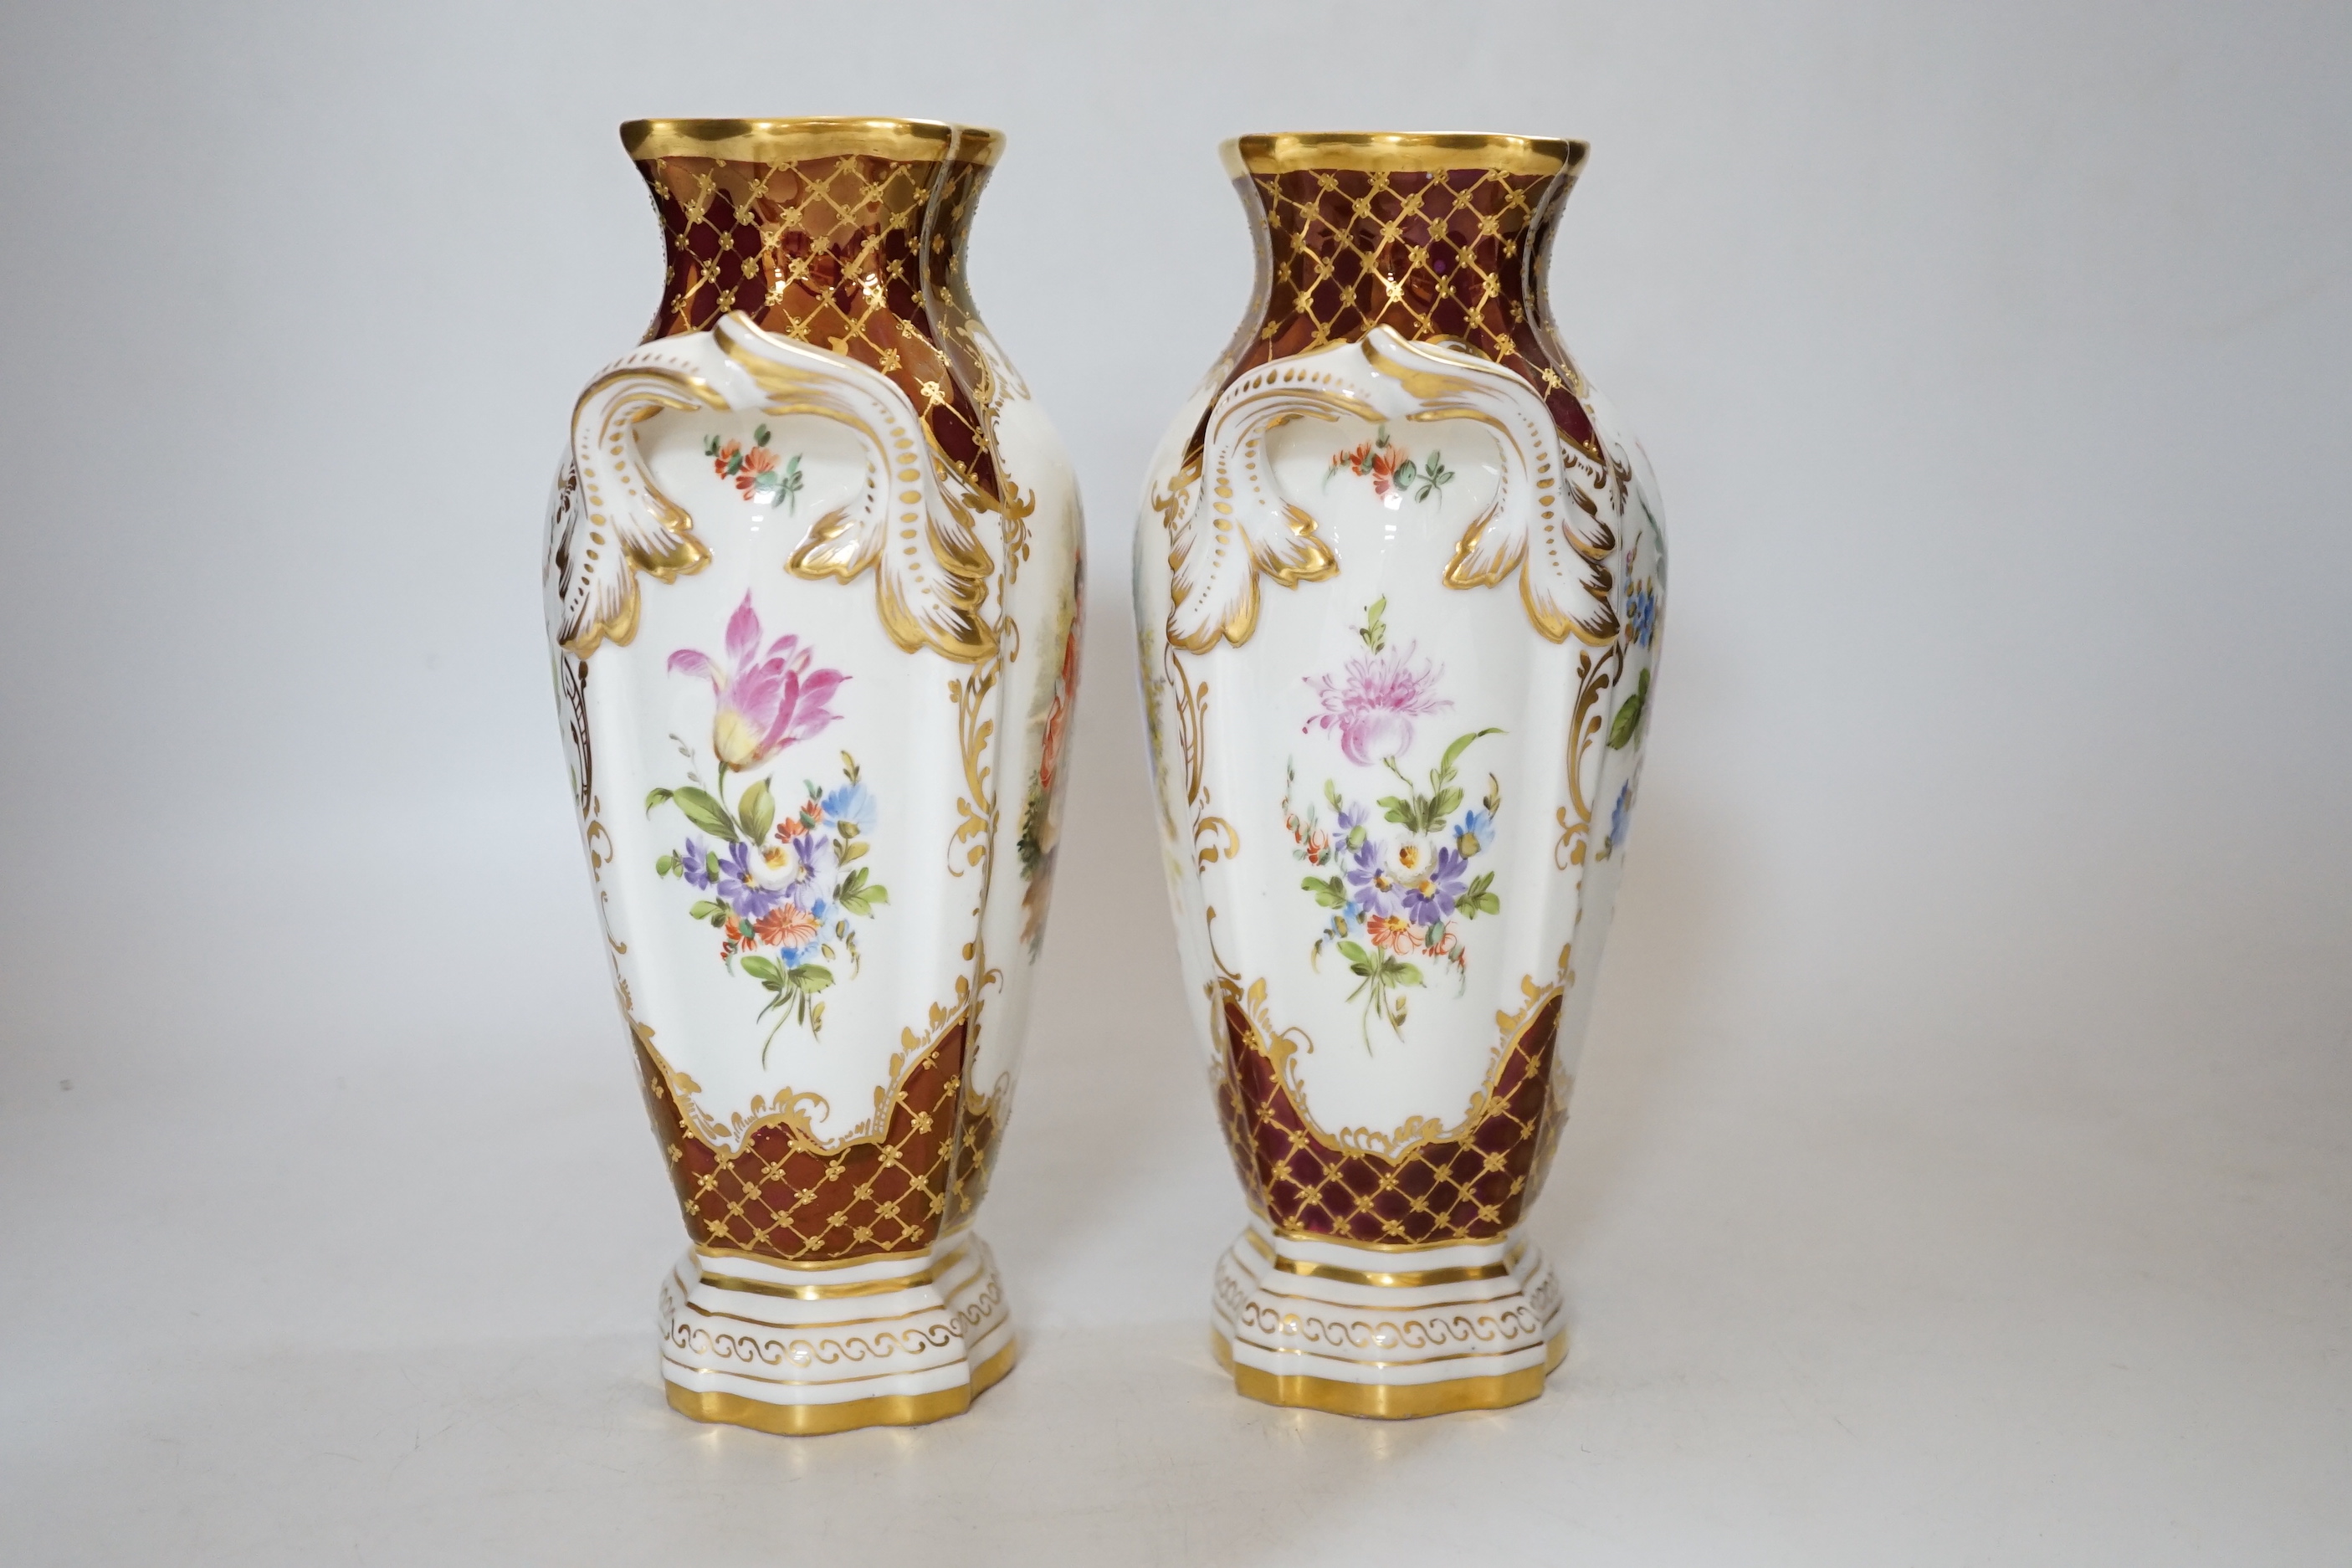 A pair of Potschappel porcelain vases, 20cm